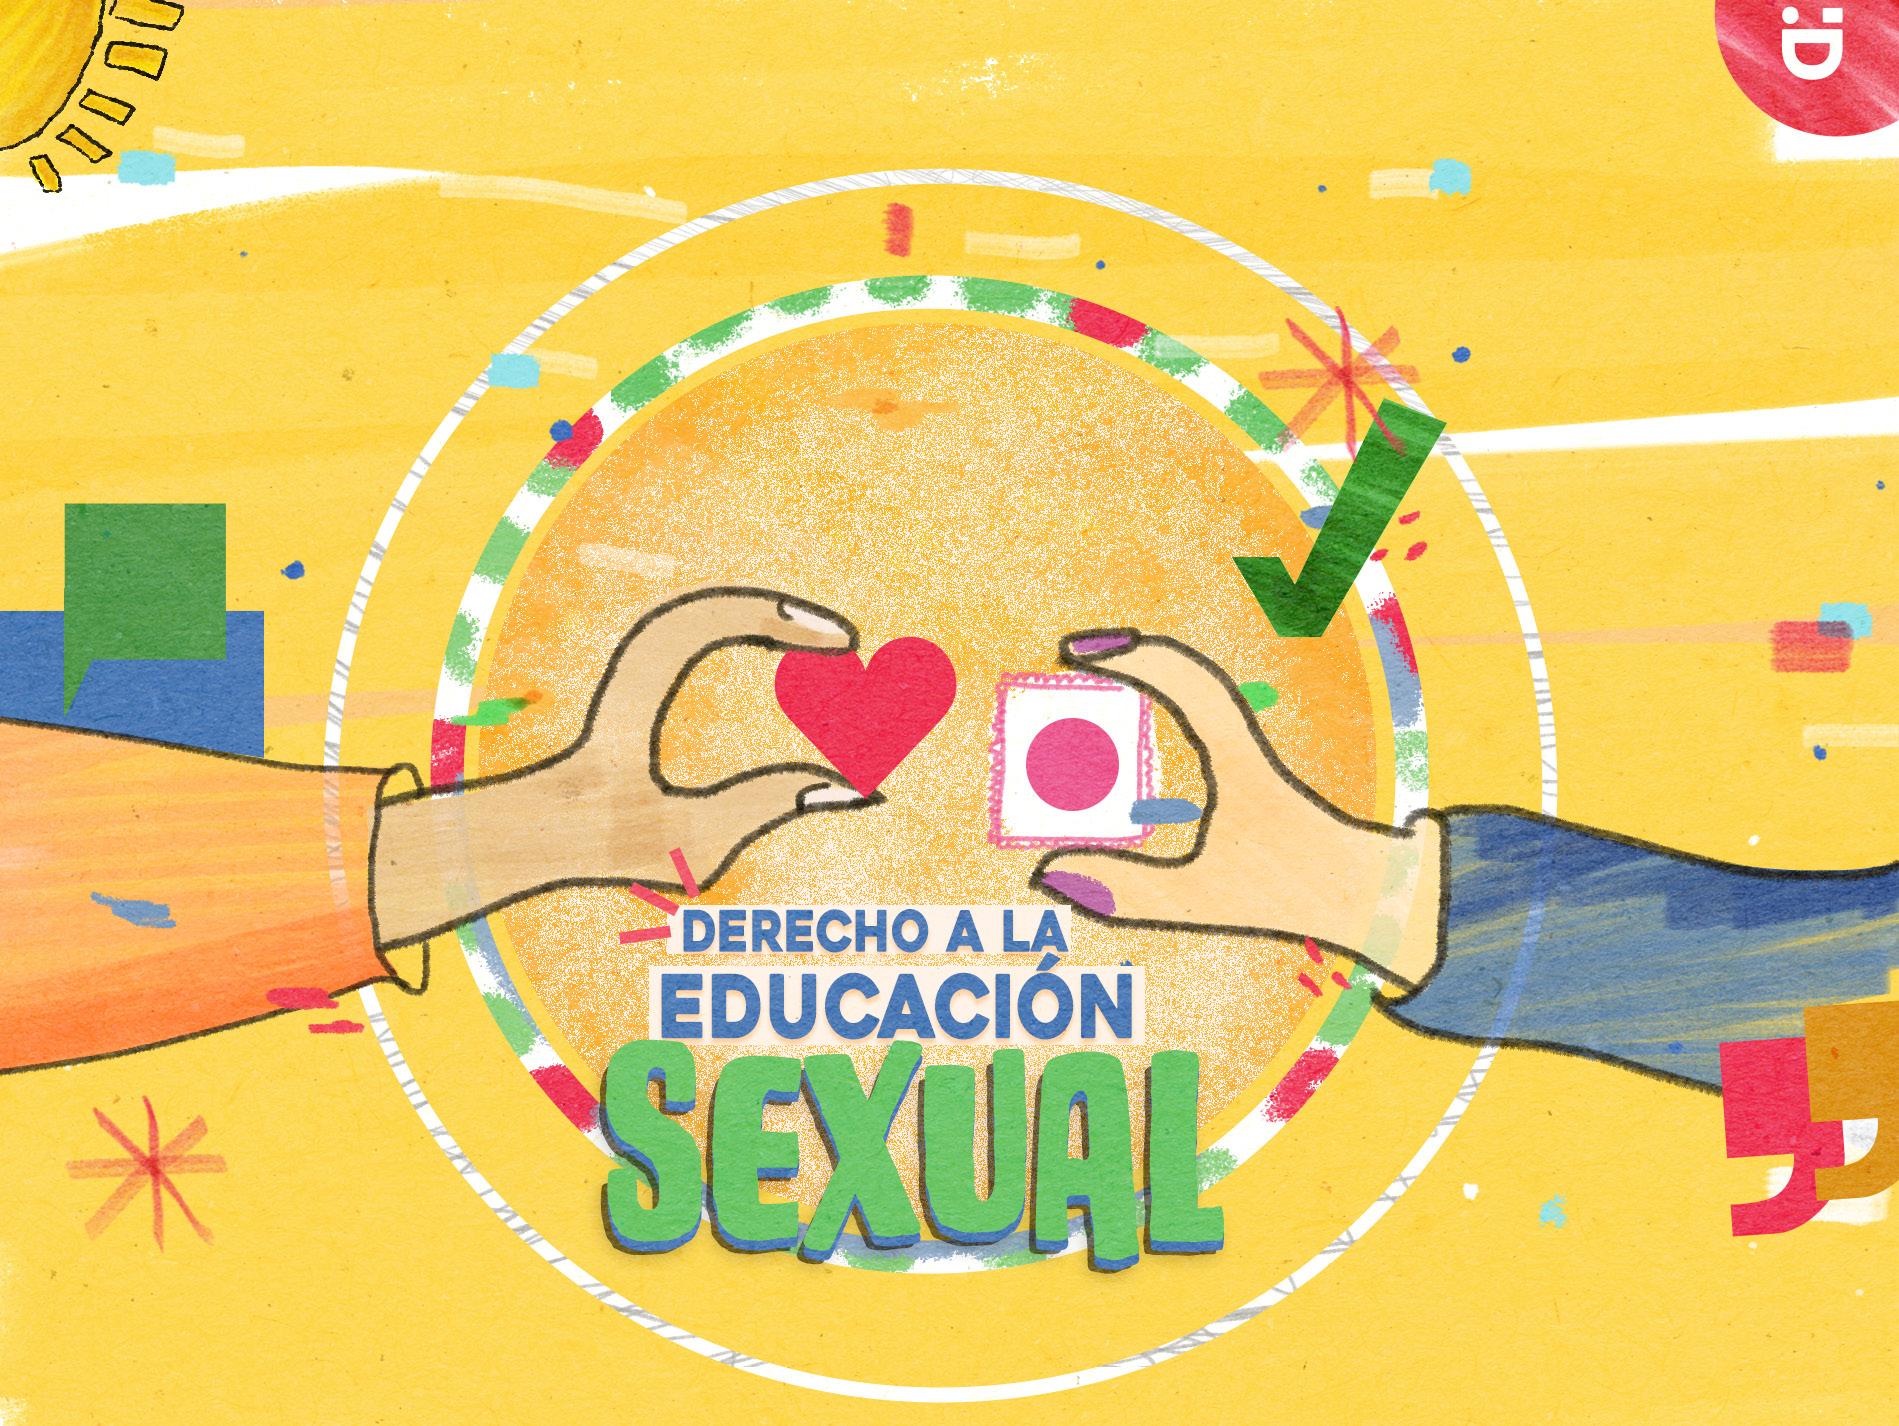  Educación Sexual Integral (ESI) promovido desde la Organización Mundial de la Salud (OMS)